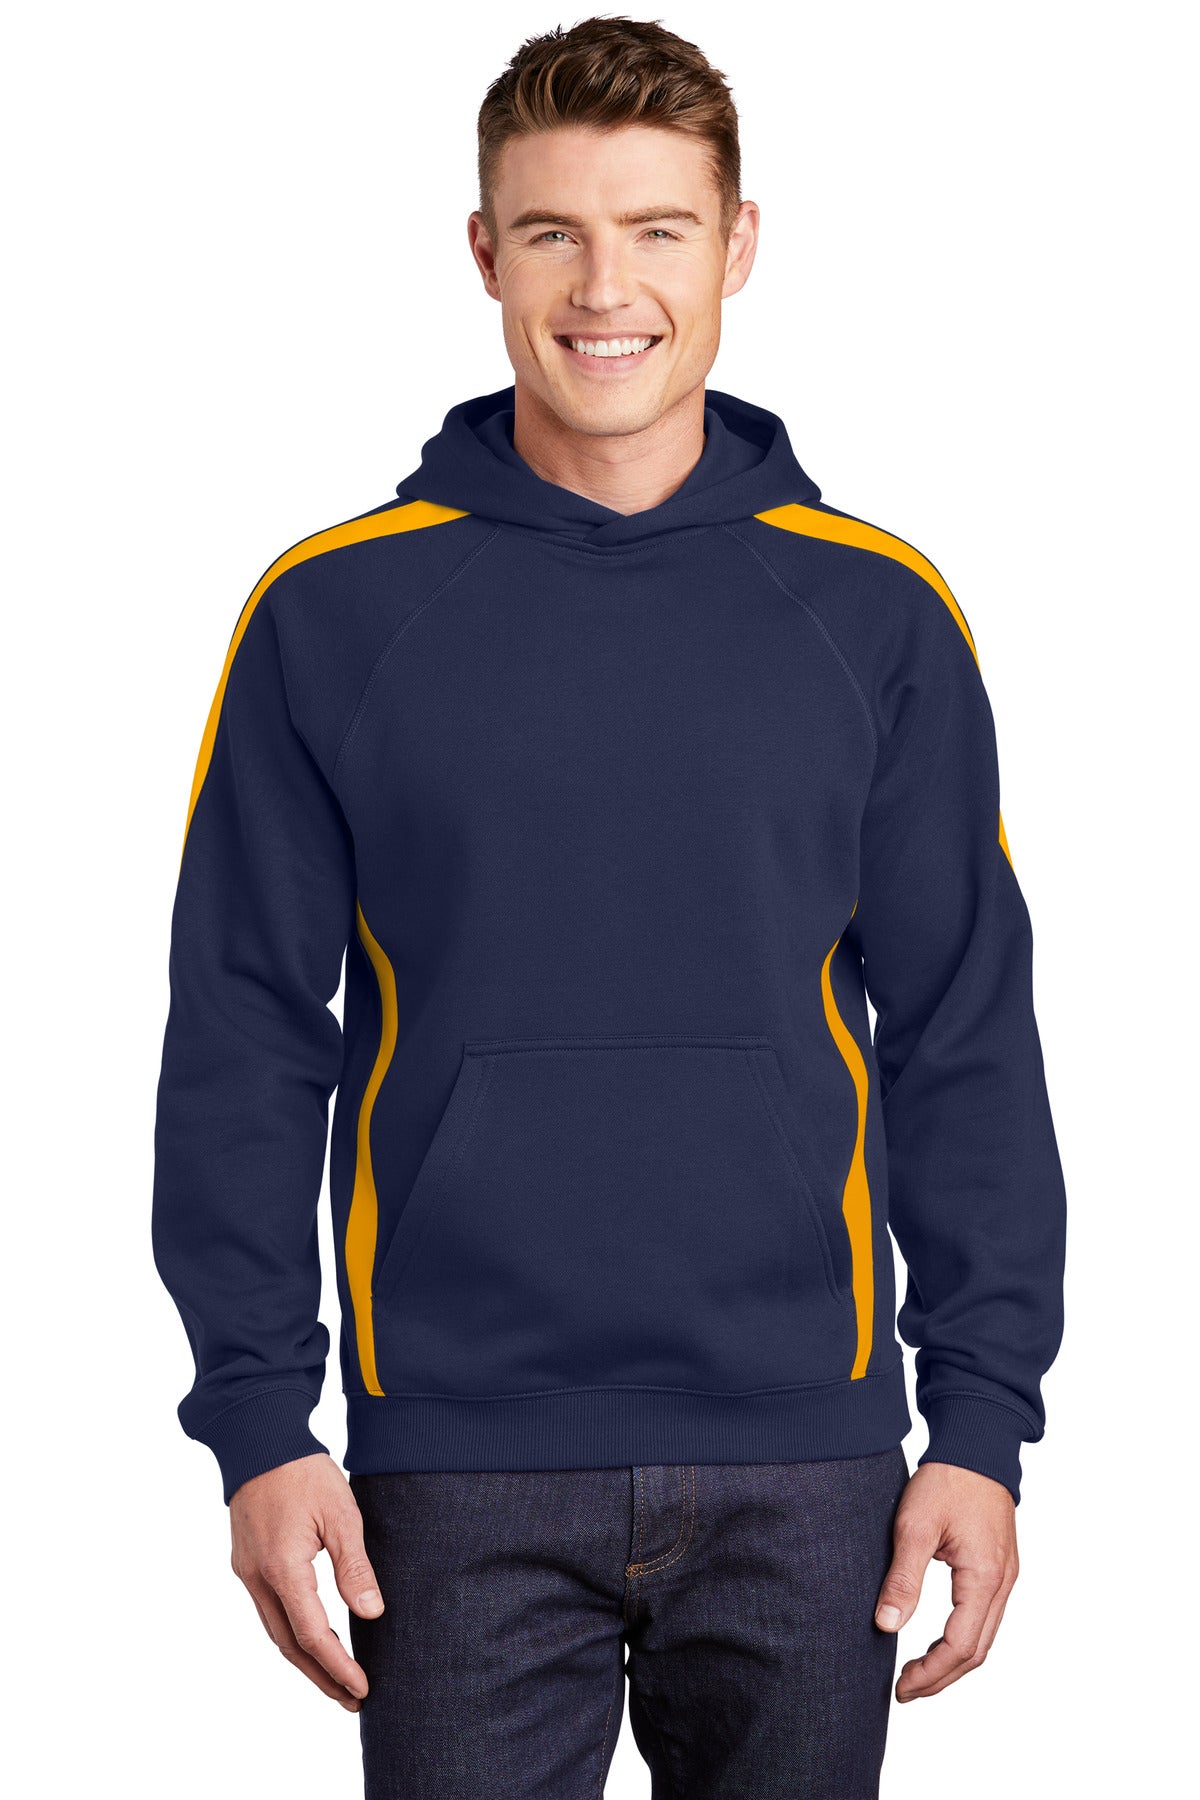 Sweatshirts/Fleece True Navy/ Gold Sport-Tek